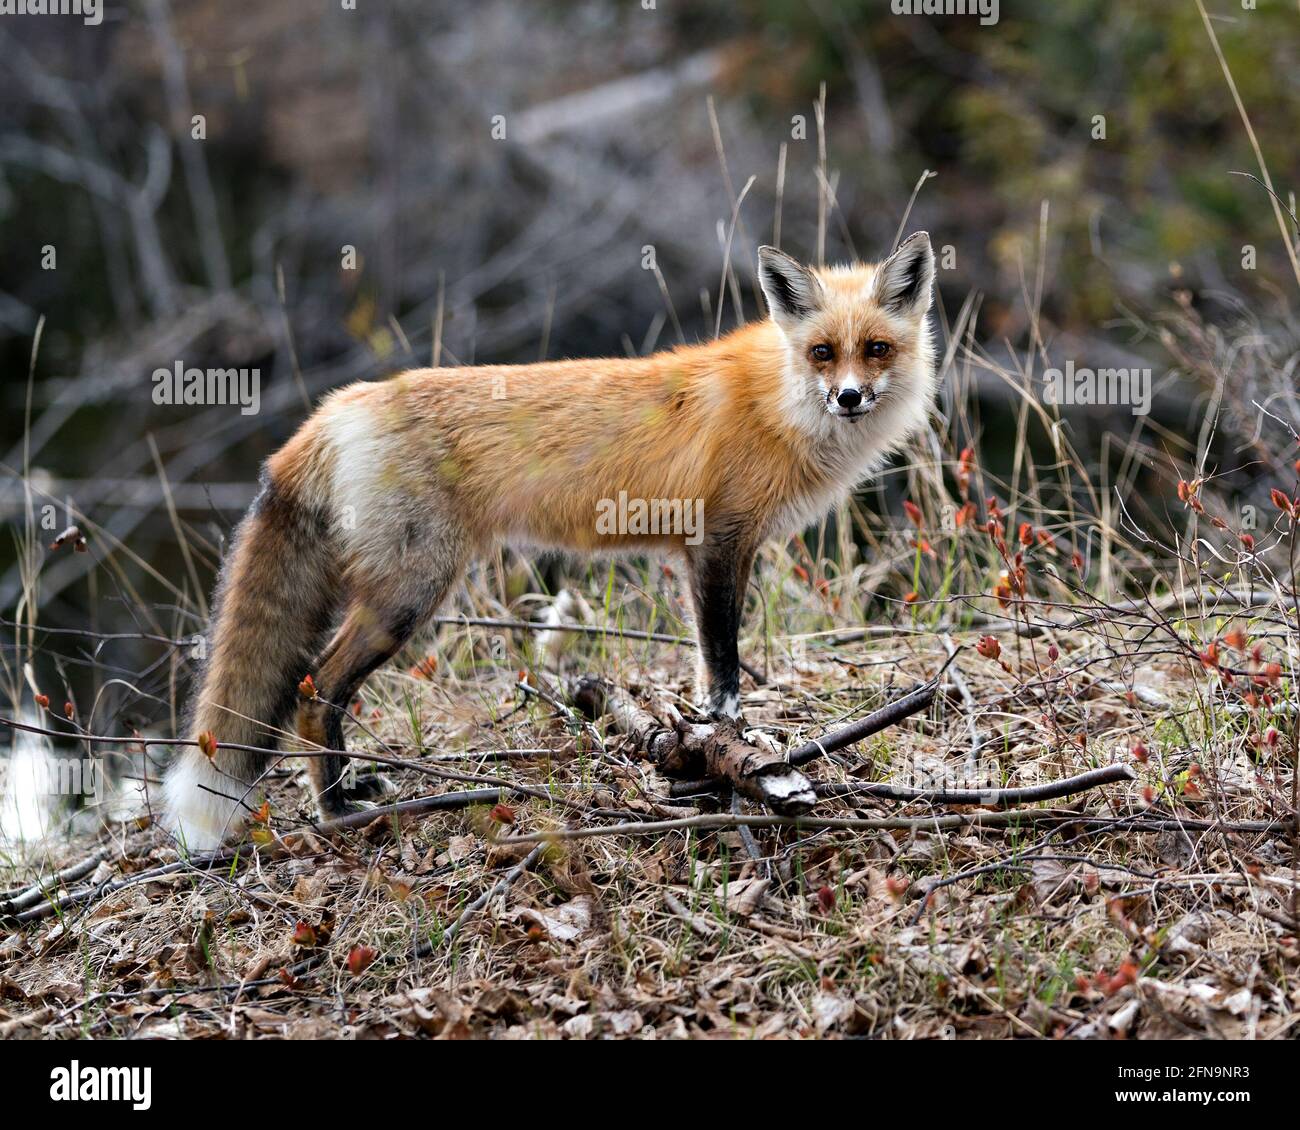 Red Fox primo piano profilo vista laterale nella stagione primaverile con sfondo sfocato e godendo il suo ambiente e habitat. Immagine FOX. Immagine. Verticale. Foto Stock